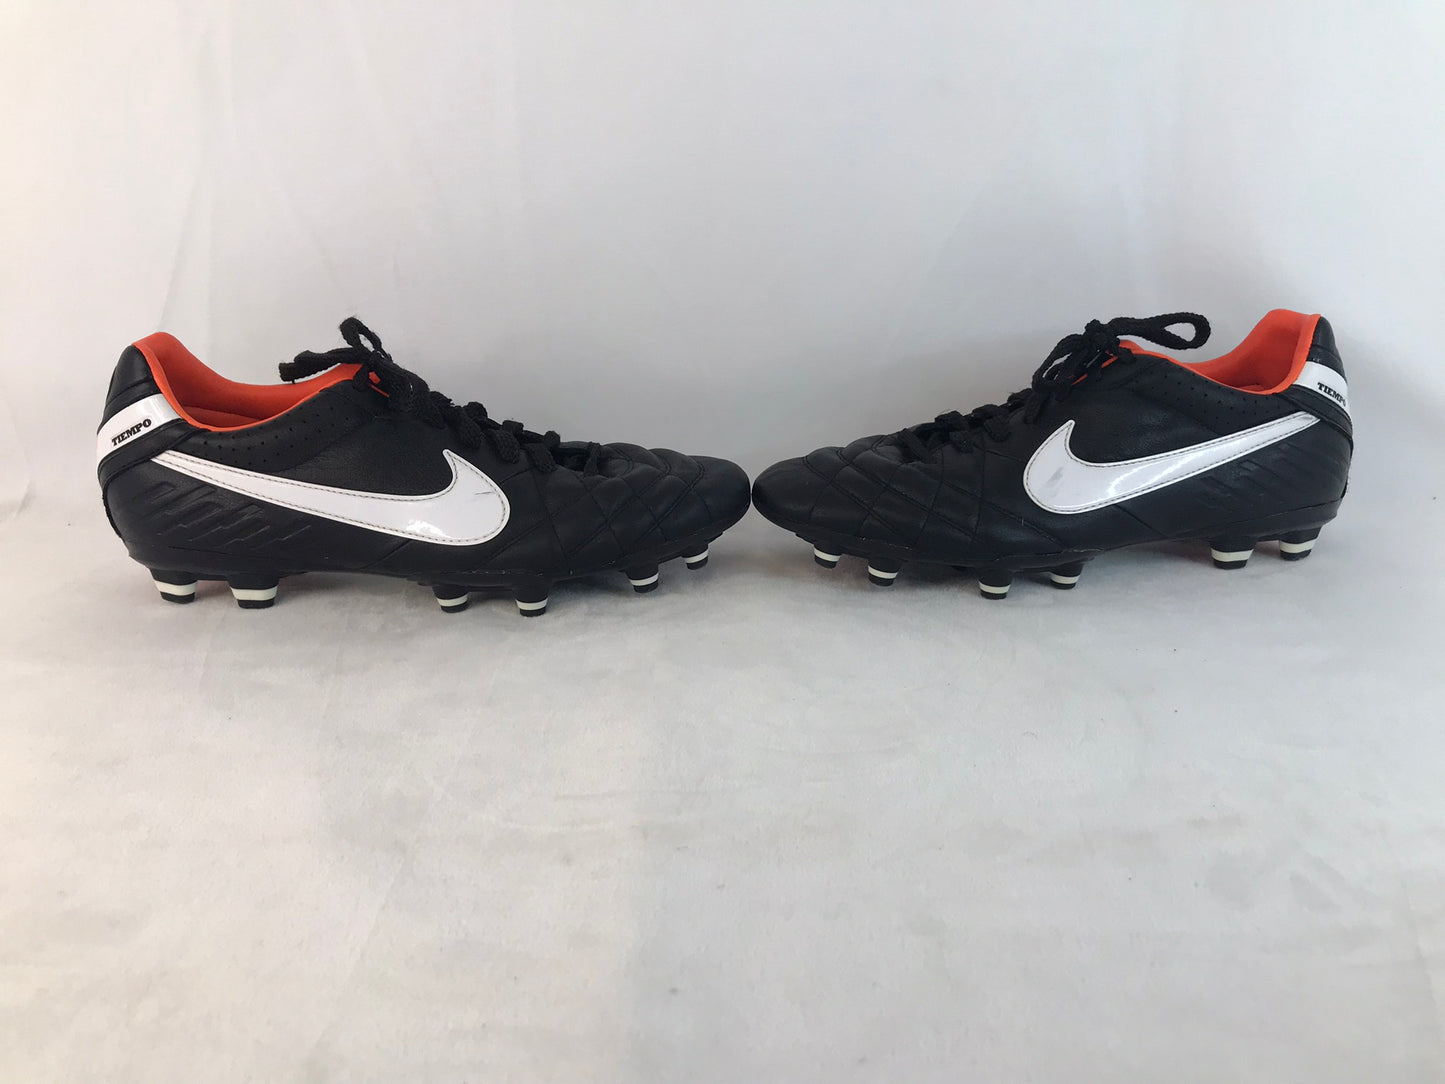 Soccer Shoes Cleats Men's Size 8 Nike Tiempo Black White Orange Excellent